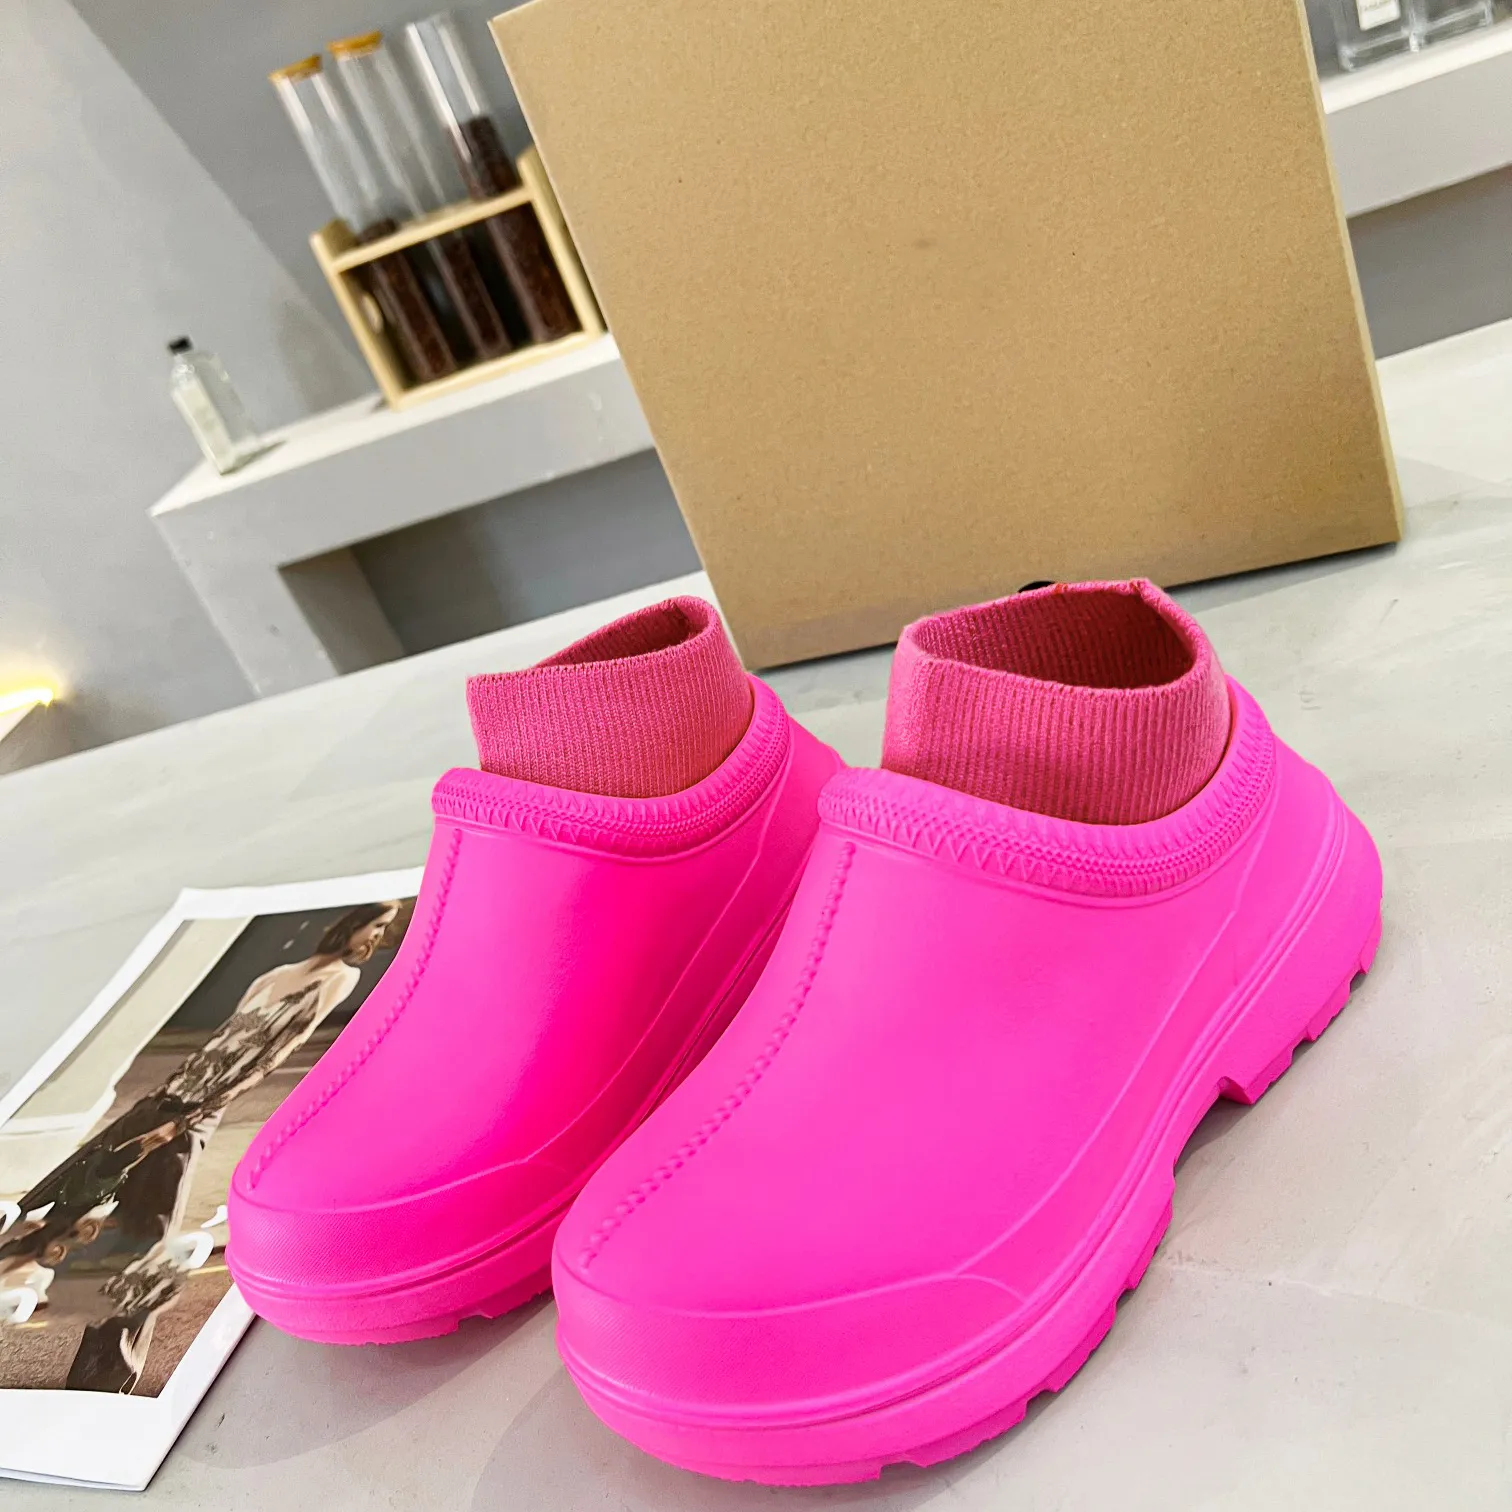 Botas ugge austrália botas de lã botas de chuva femininas meias de borracha antiderrapante brilhante amarelo rosa verde botas uggsly